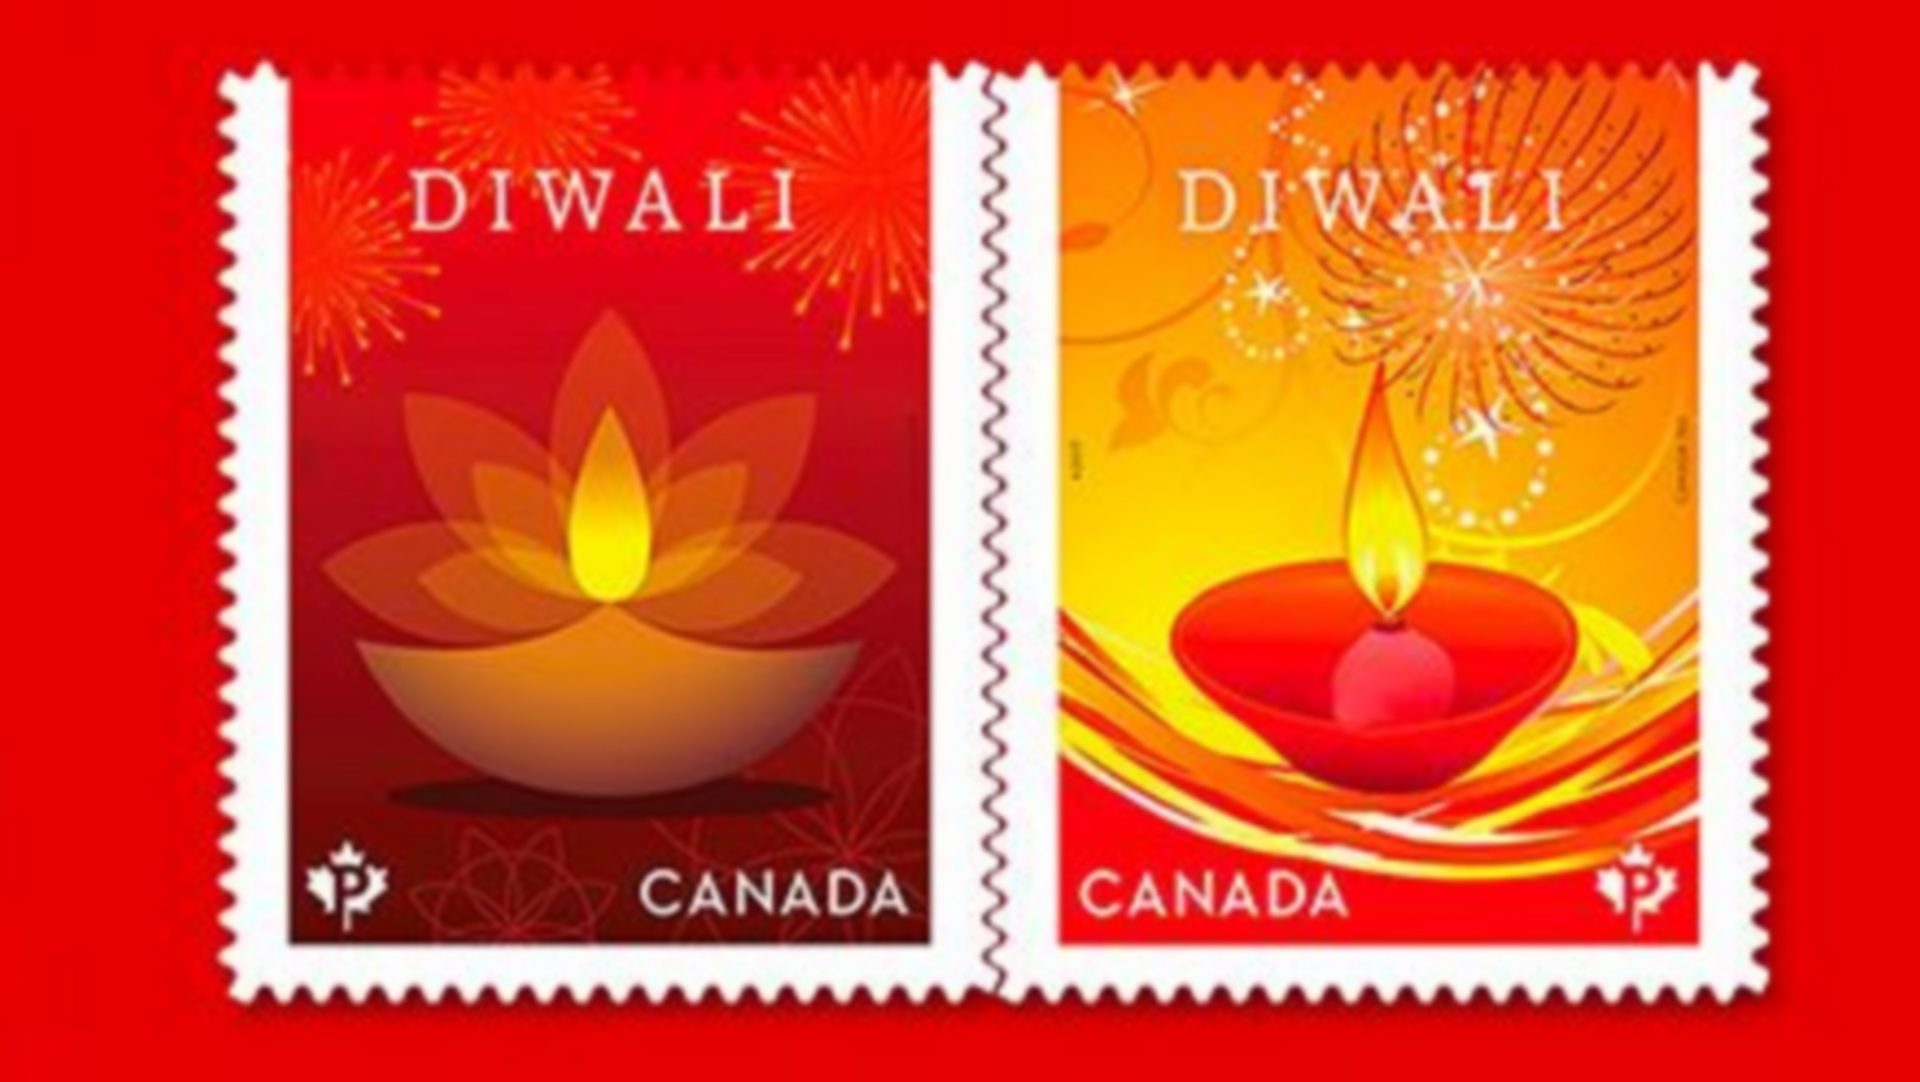 Les postes du Canada et de l'Inde ont édité conjointement deux timbres spéciaux à l'occasion de la célébration de la fête de Diwali, appelé aussi fête des lumières.